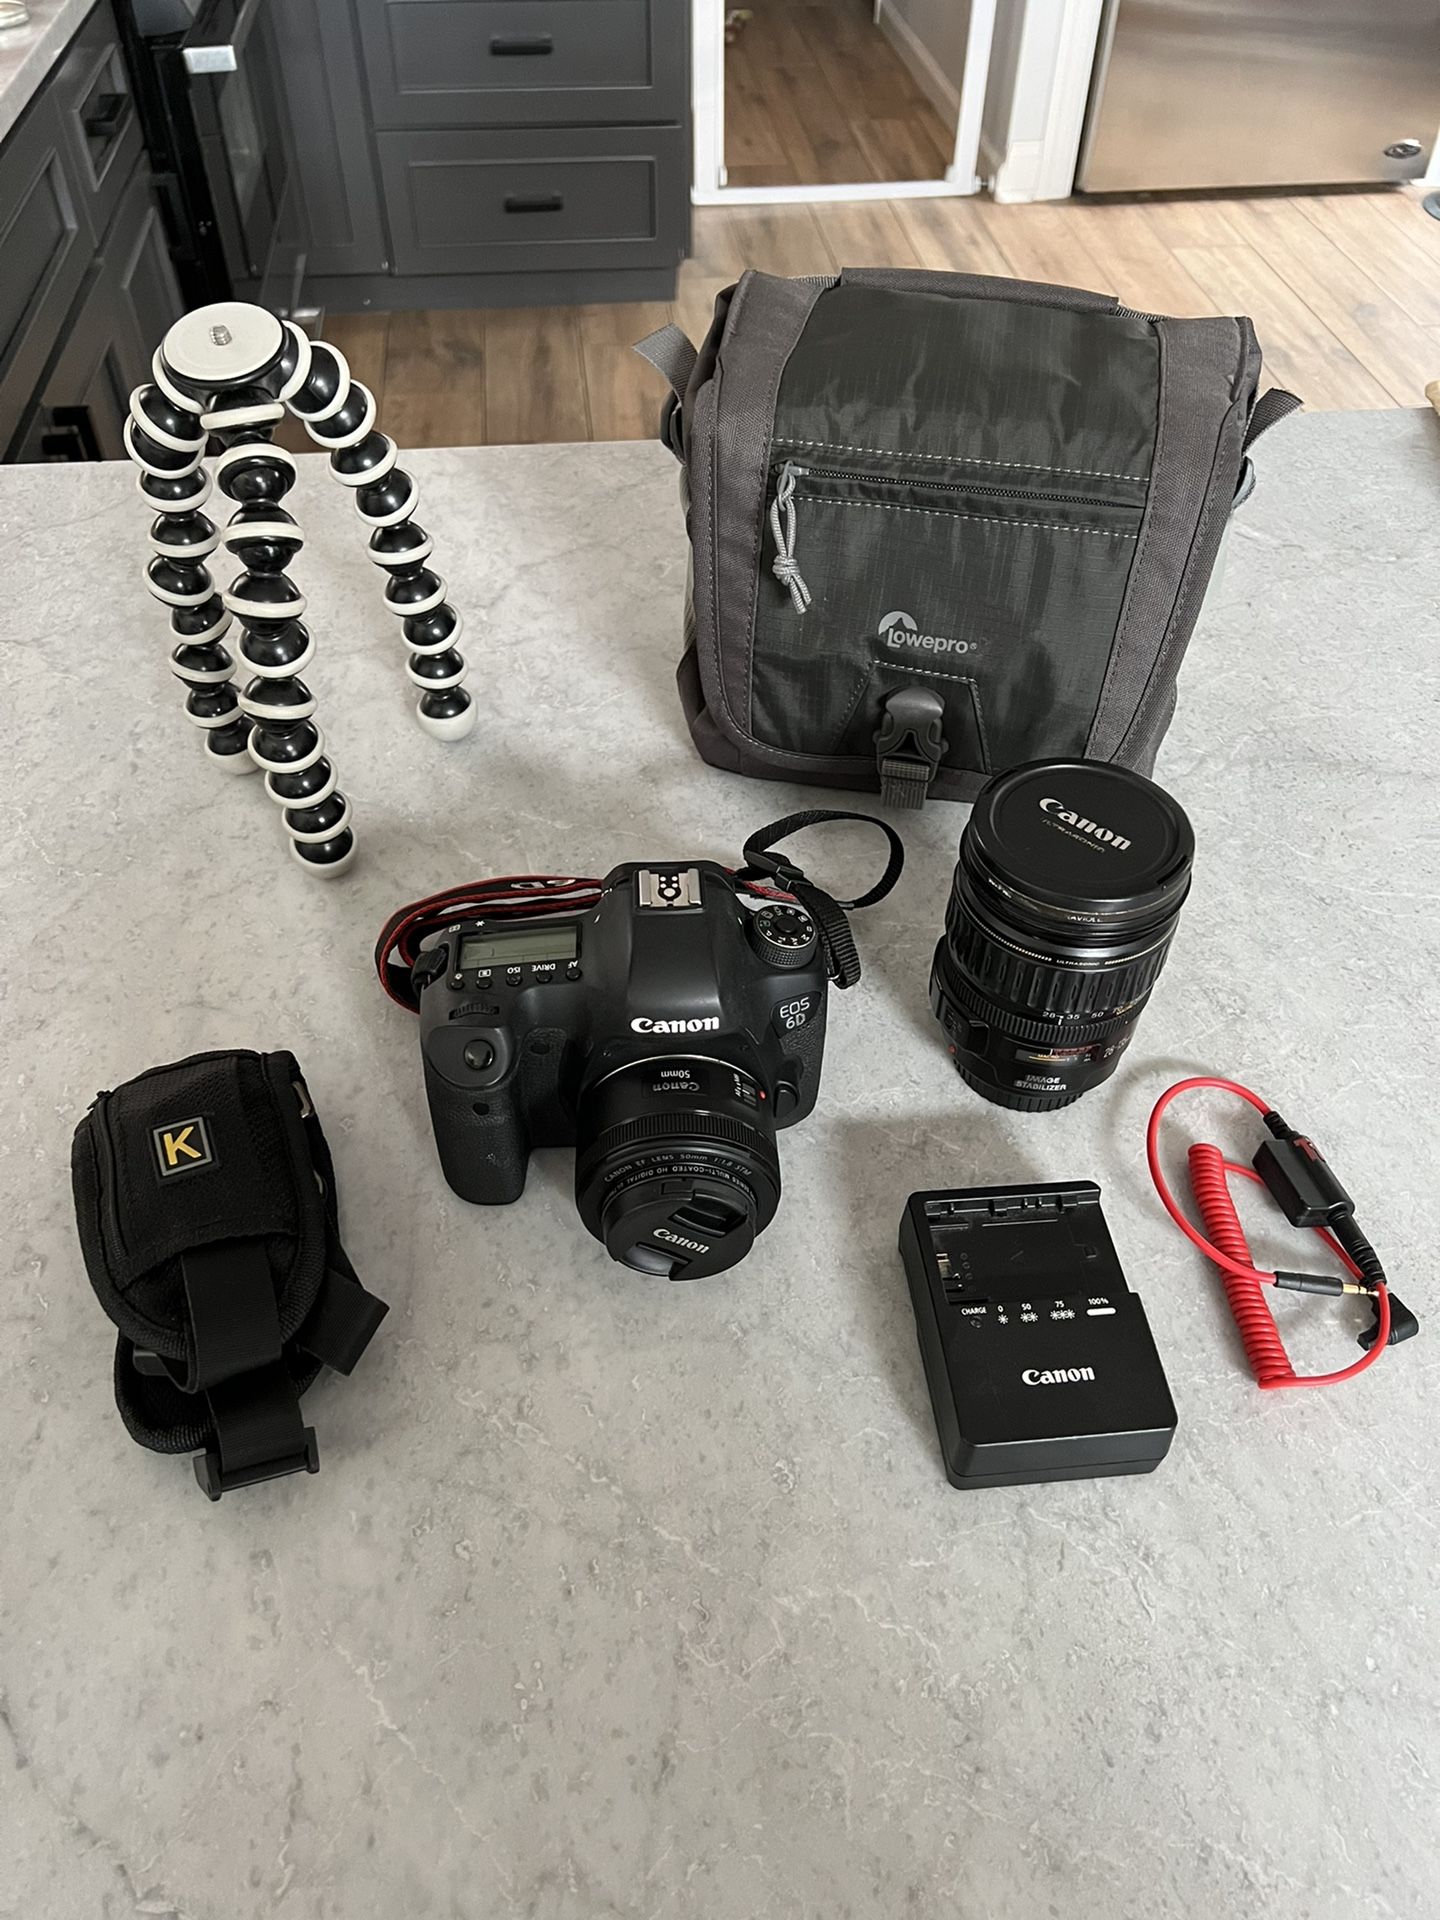 Canon 6D (WiFi/GPS) w/ Canon 28-135 Lens, Canon 50mm Prime Lens, Case bag, Triggertrap Remote, GorillaPod Tripod, Sling Quickstrap, 32GB SD Mint w/box